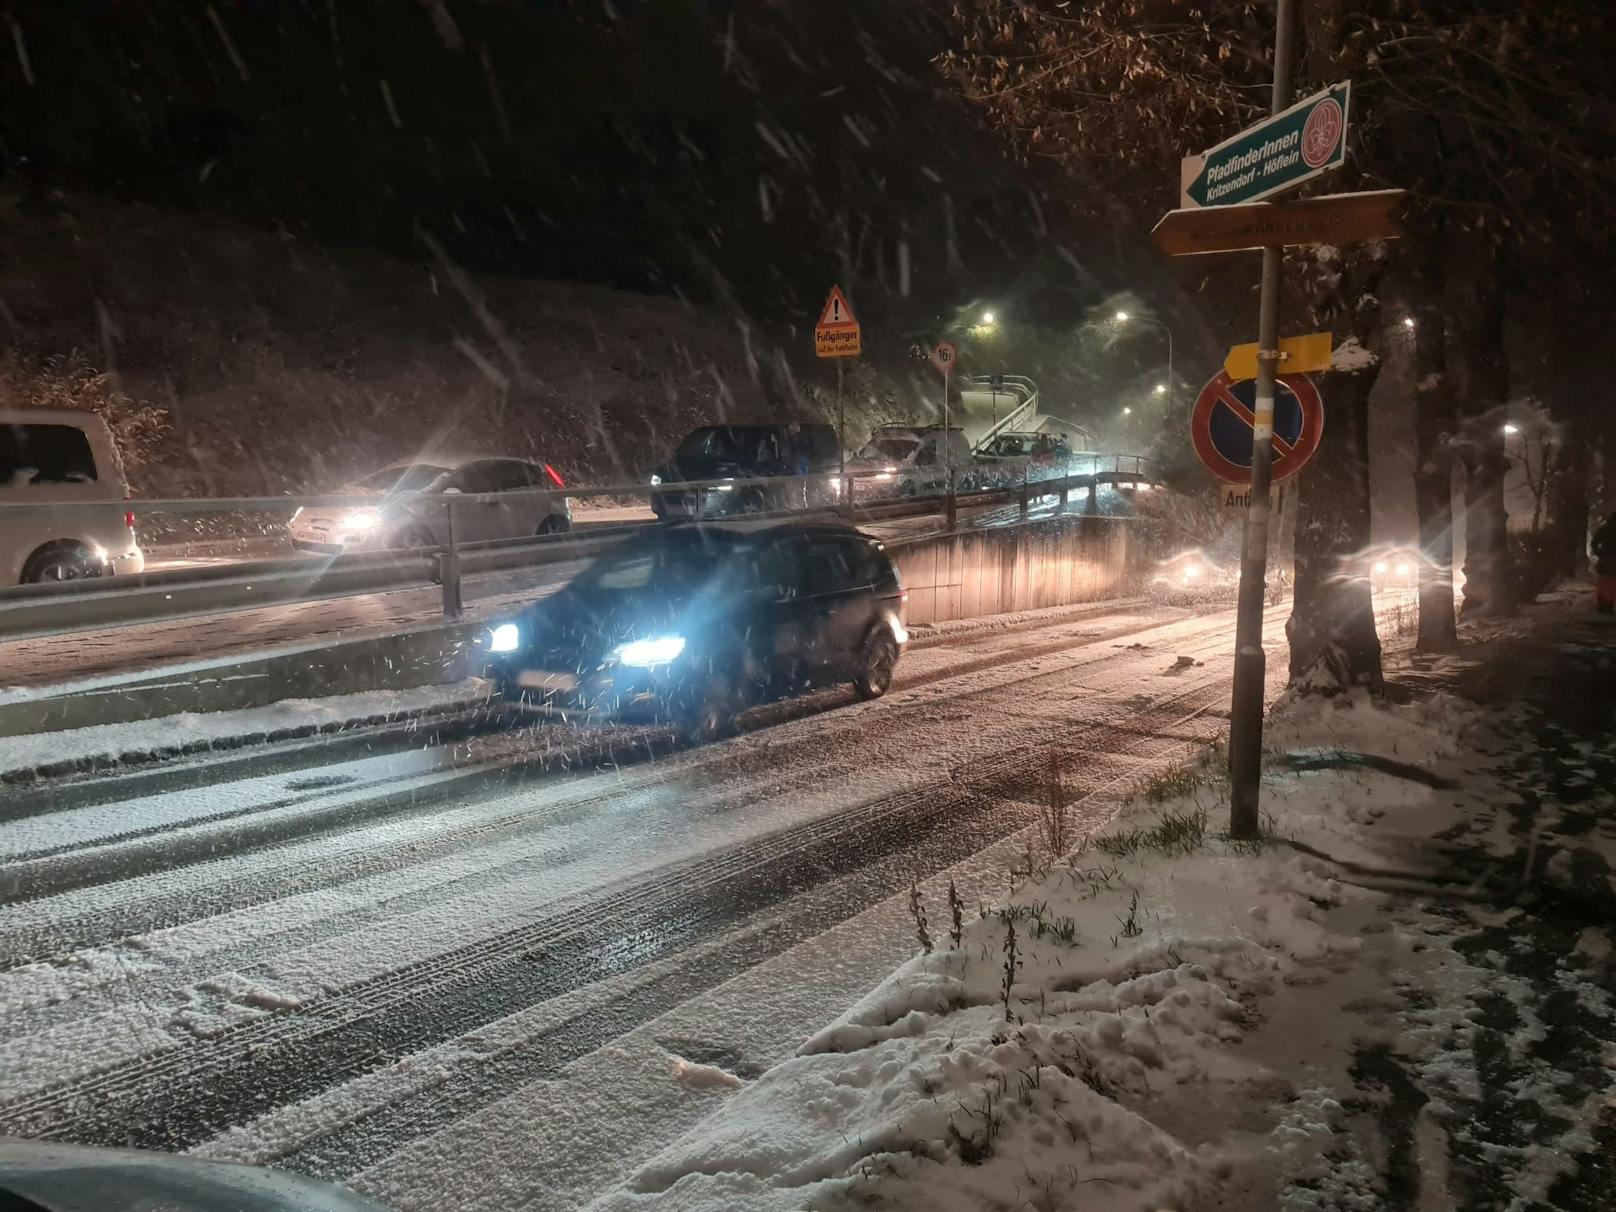 Schnee-Chaos am 12. Dezember auf der Hauptstraße in Kritzendorf, Klosterneuburg.